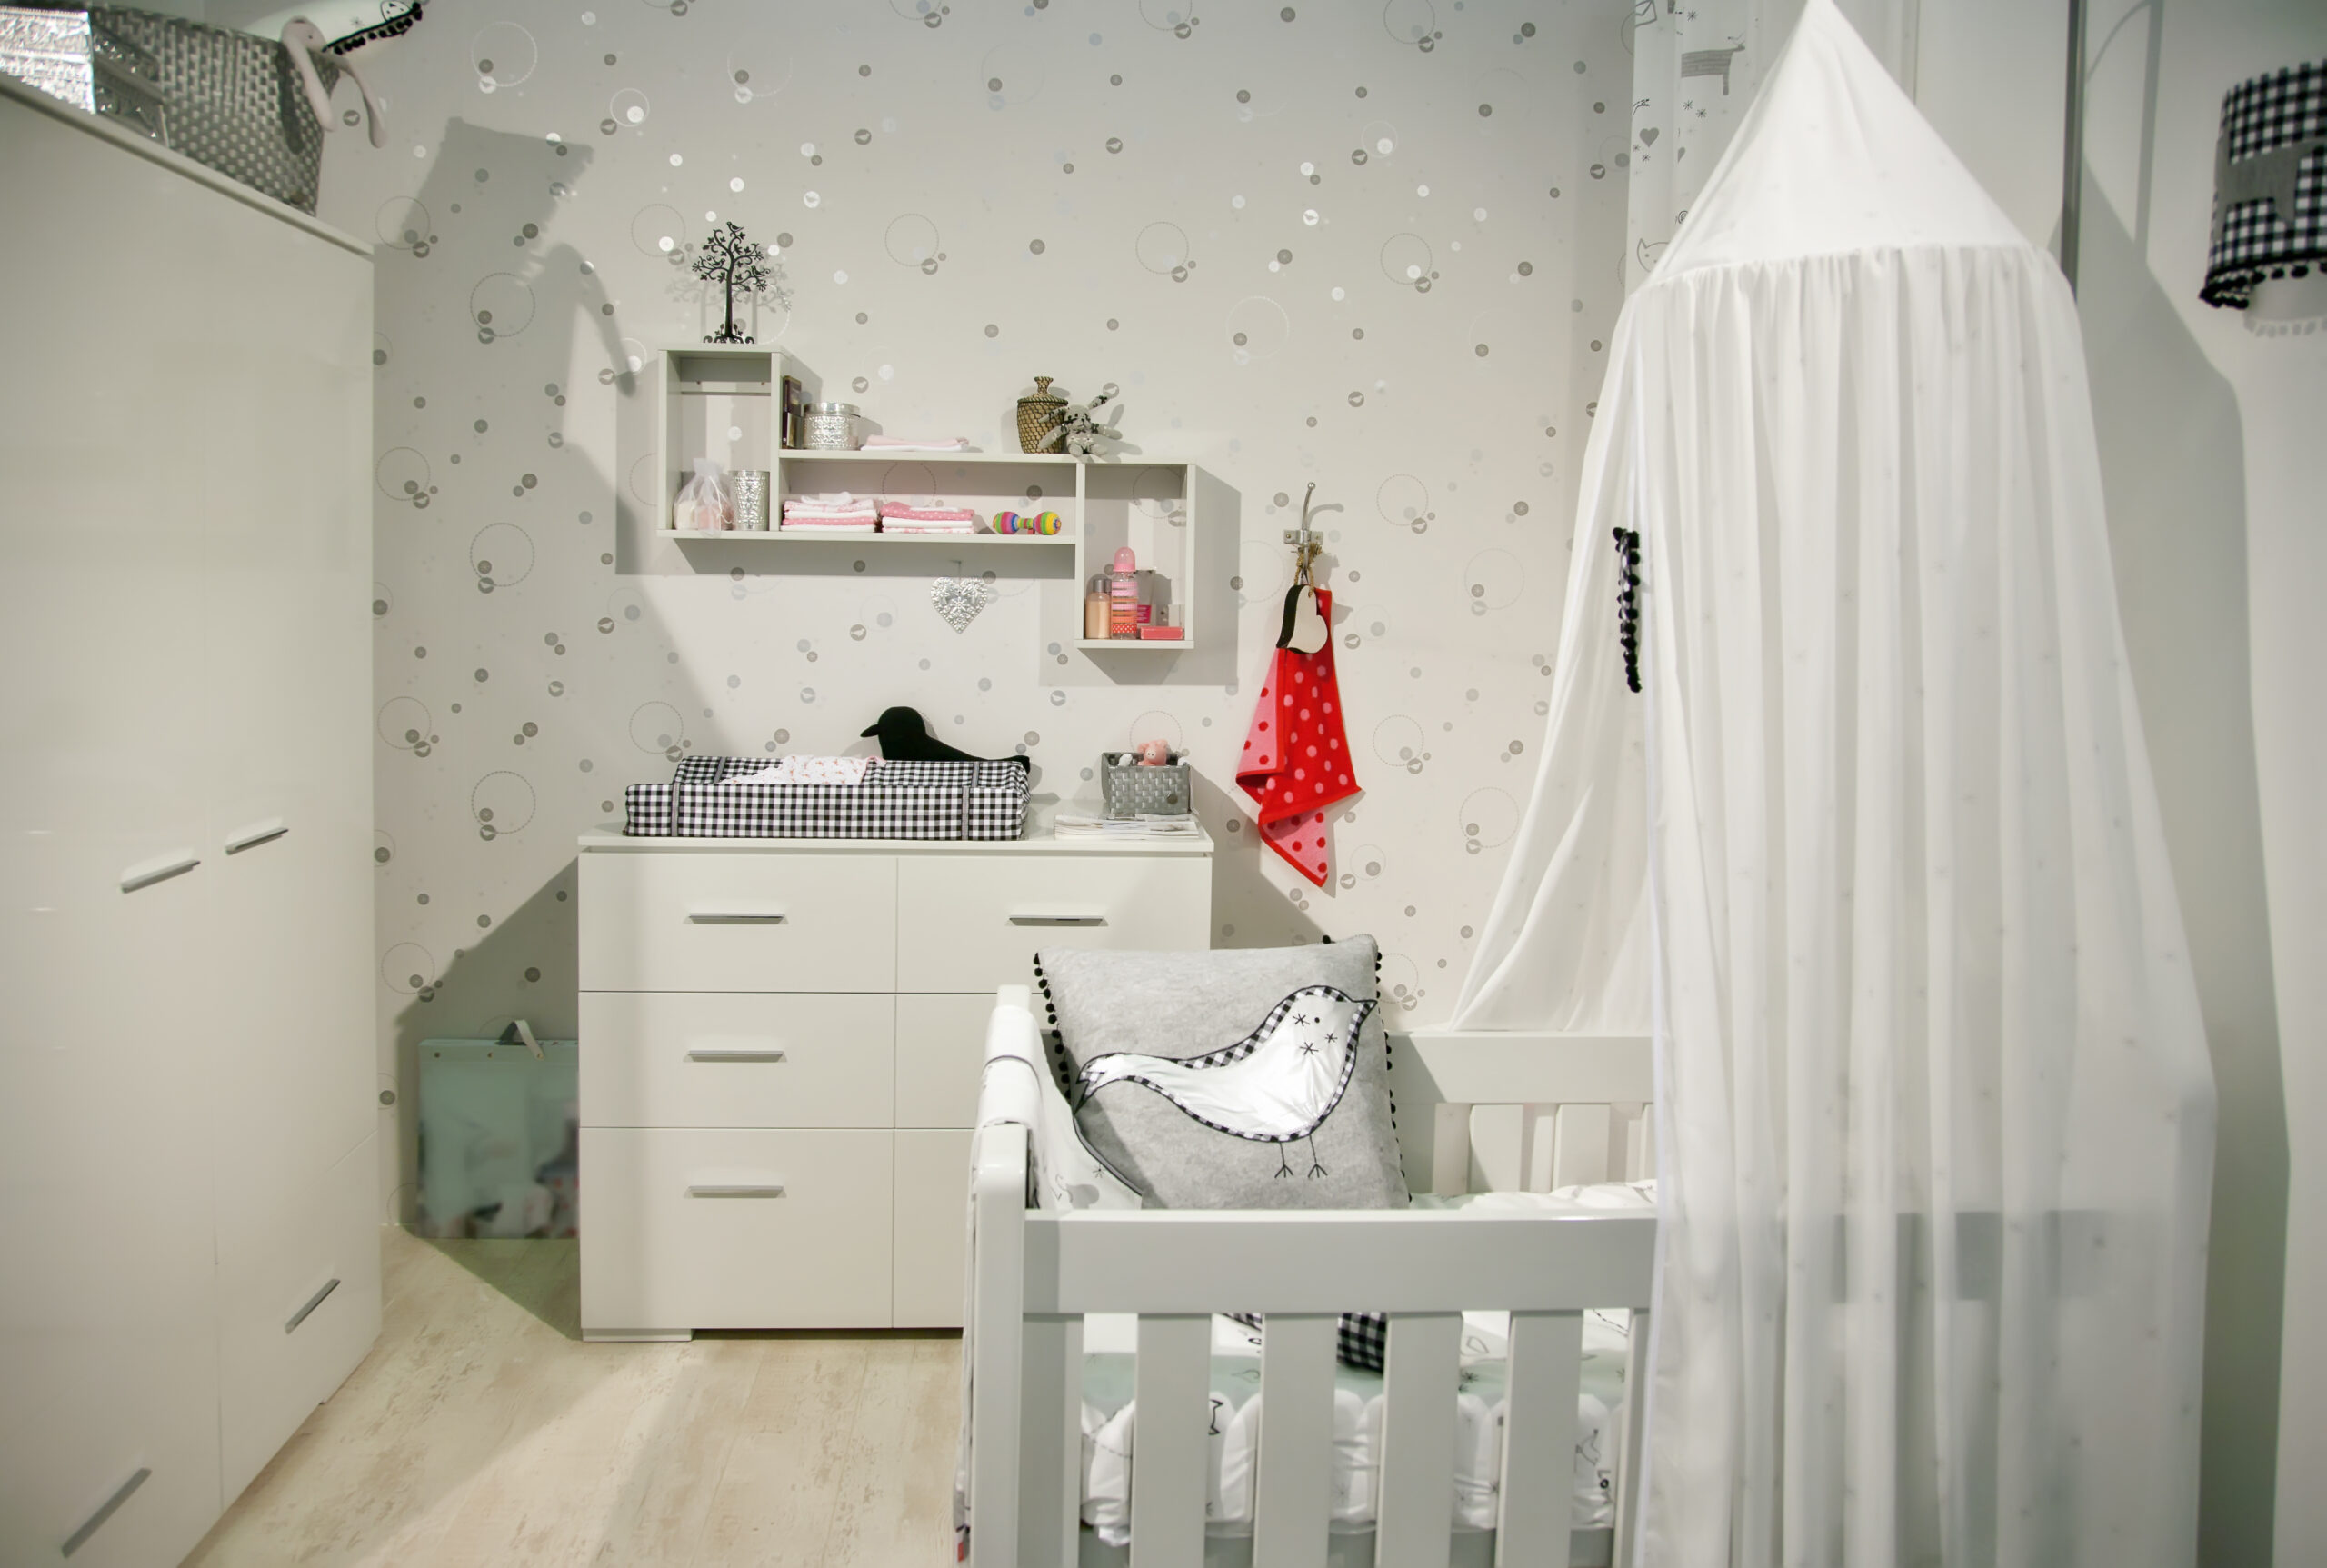 Koop je een babykamer compleet alle los elkaar?